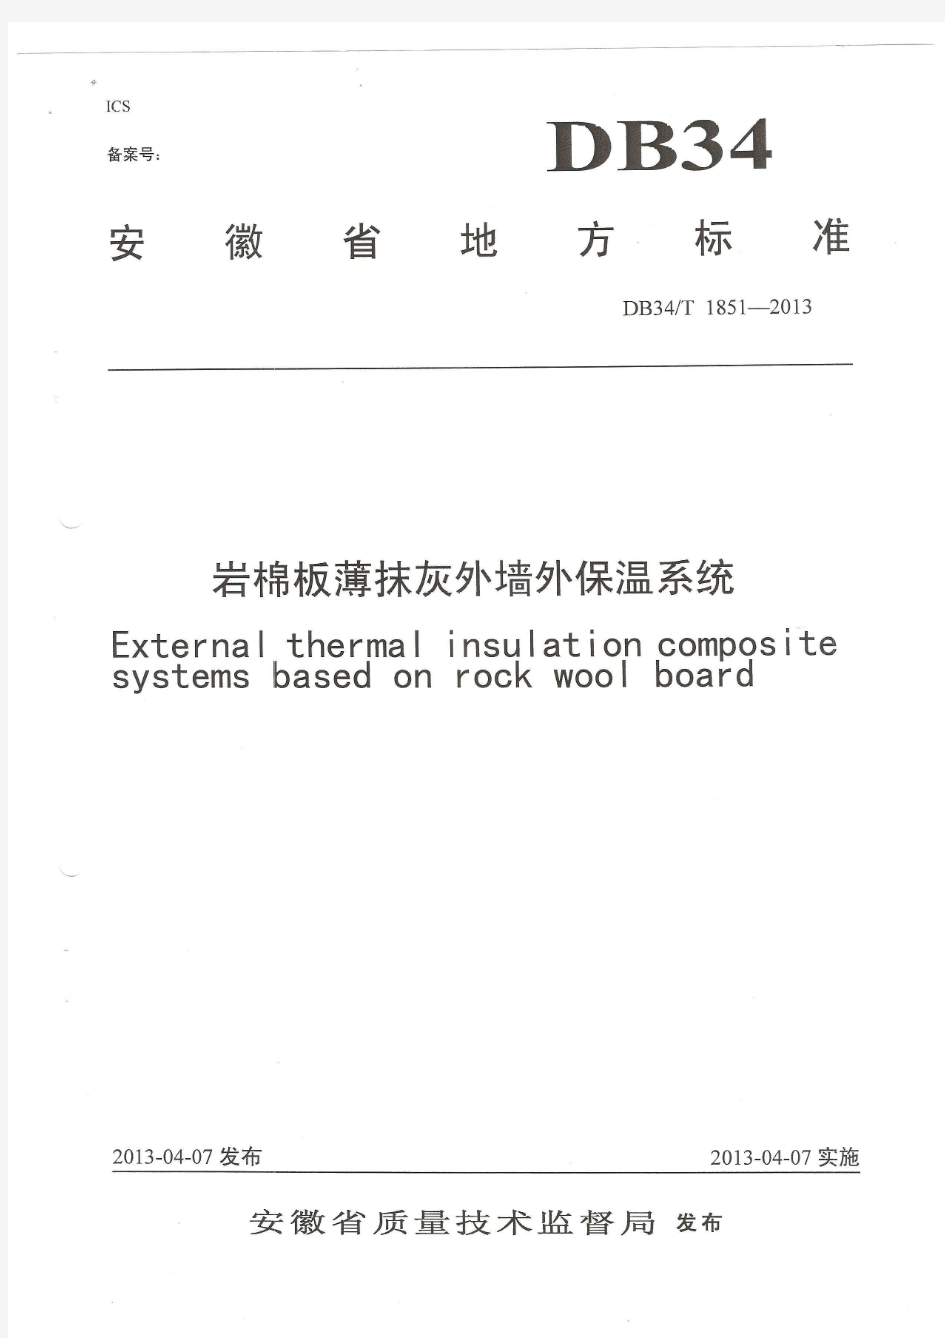 DB34-T 1851-2013安徽省岩棉板薄抹灰外墙外保温系统